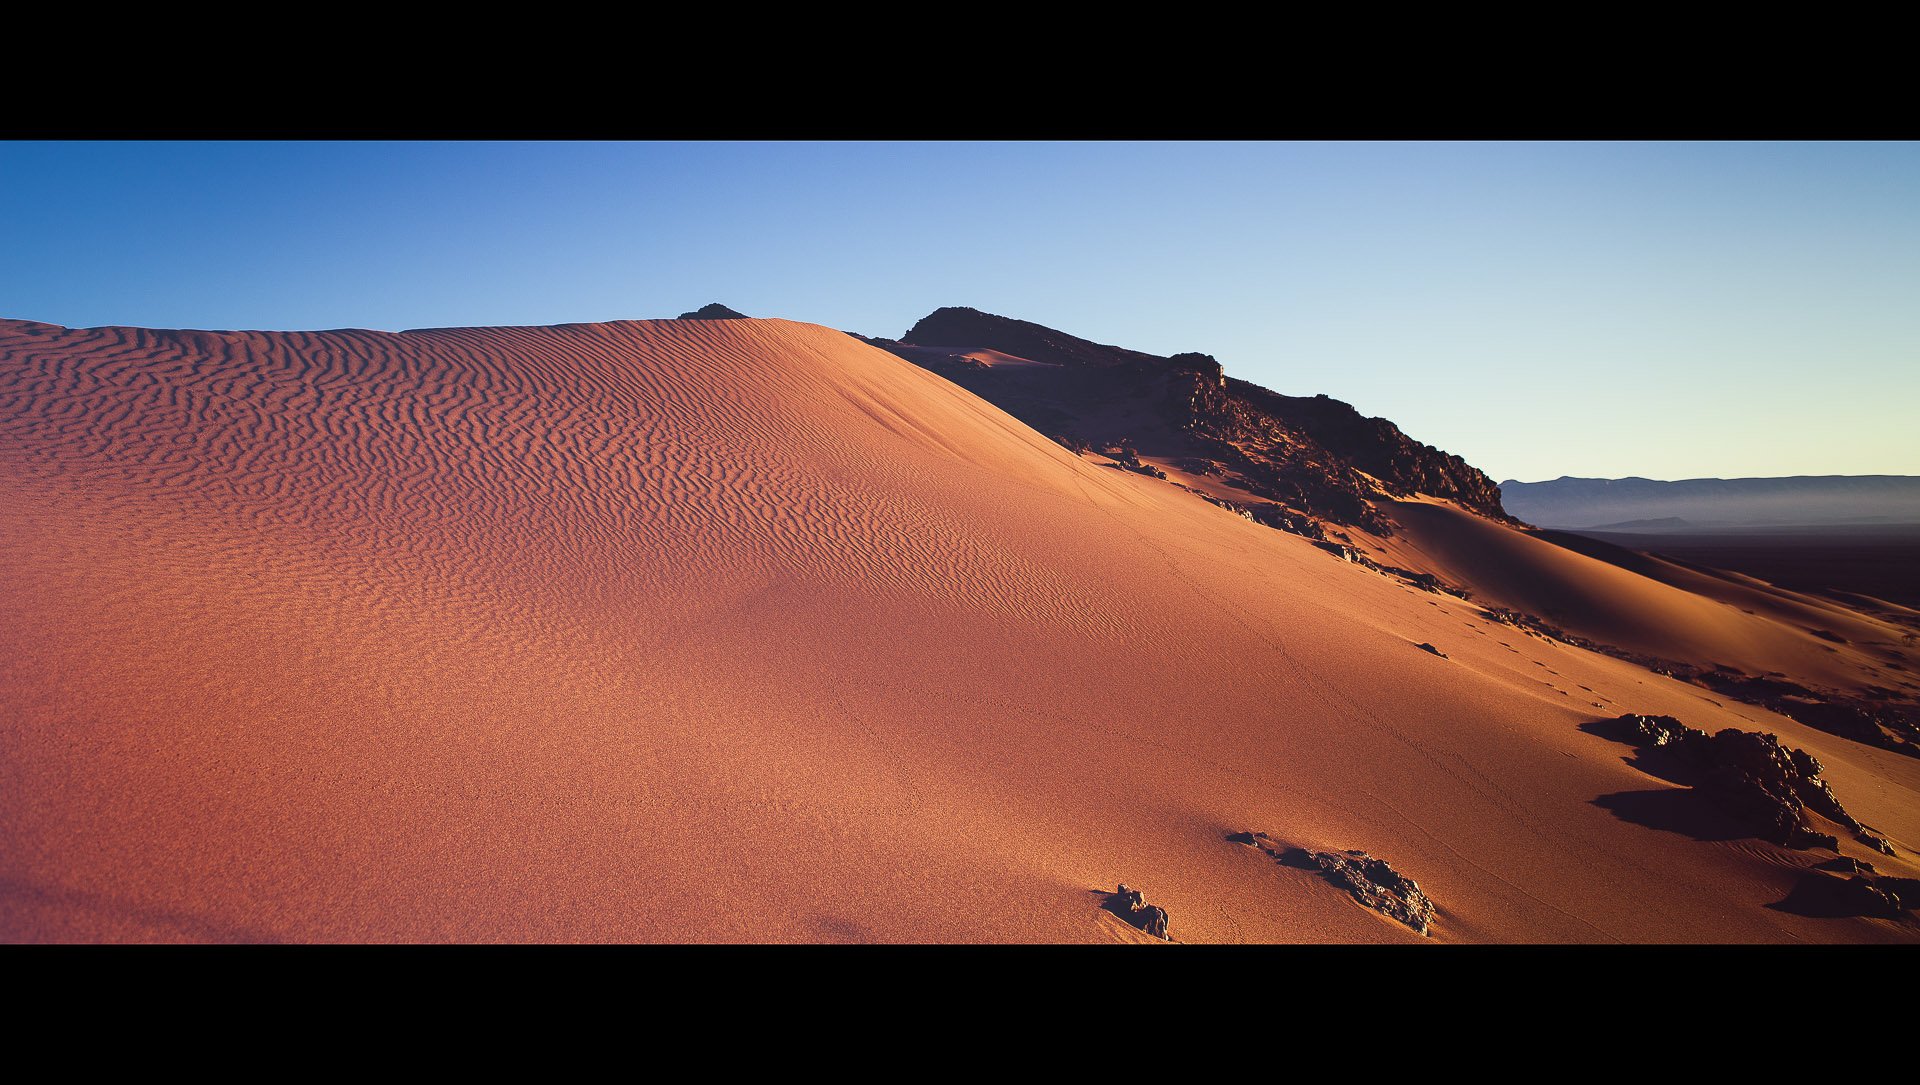 A desert dune lit by early sunrise light